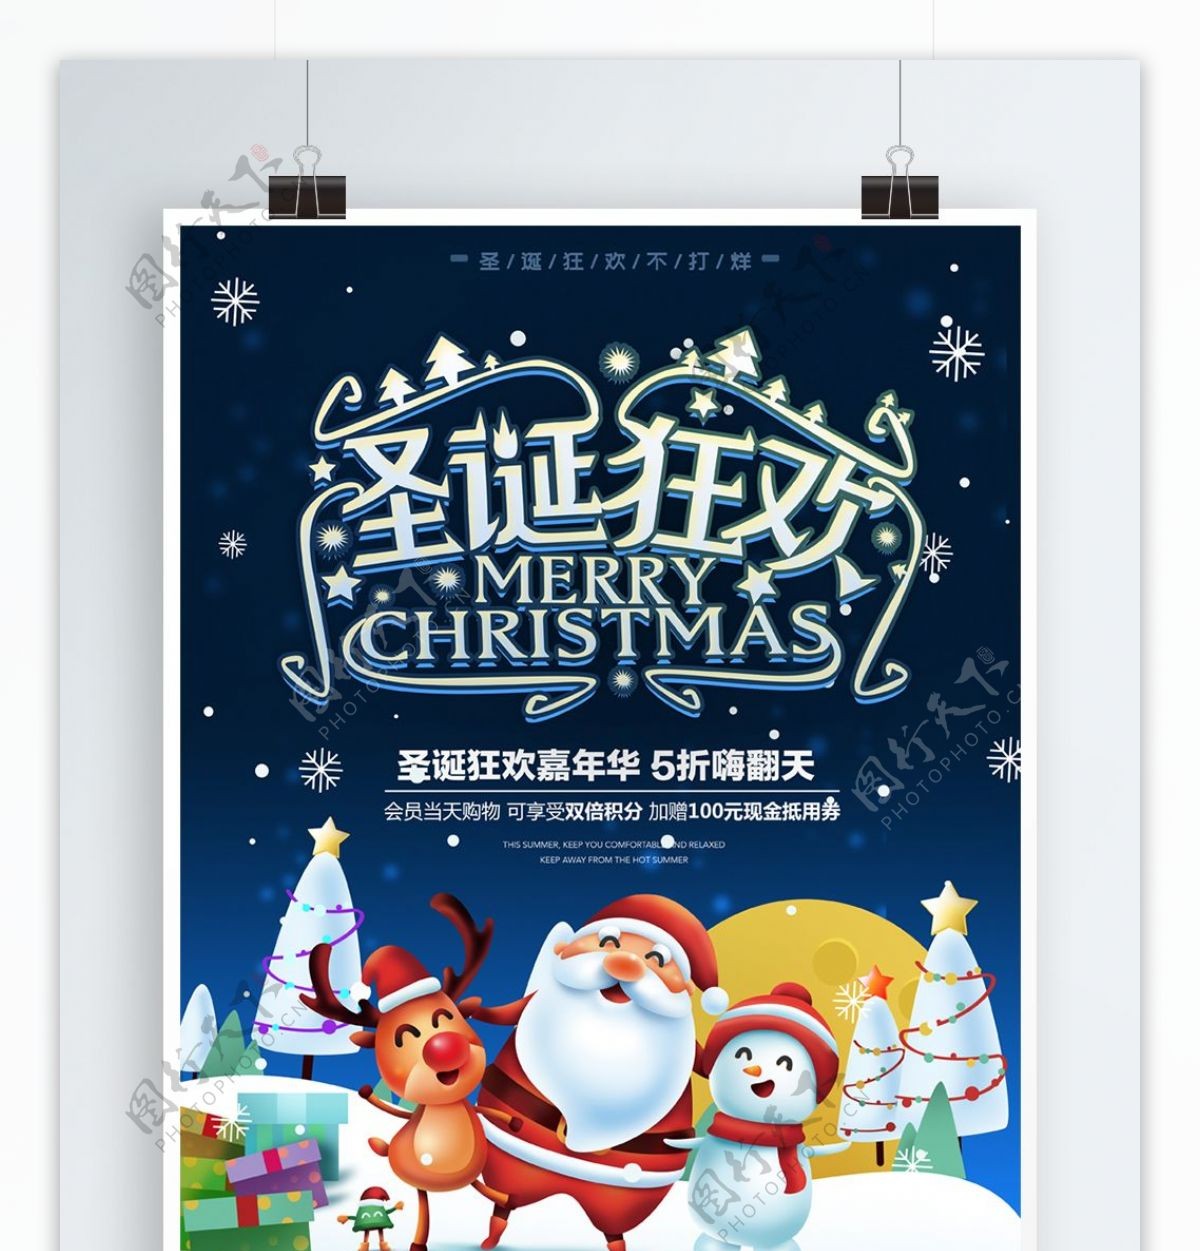 圣诞狂欢插画圣诞老人麋鹿圣诞节促销海报